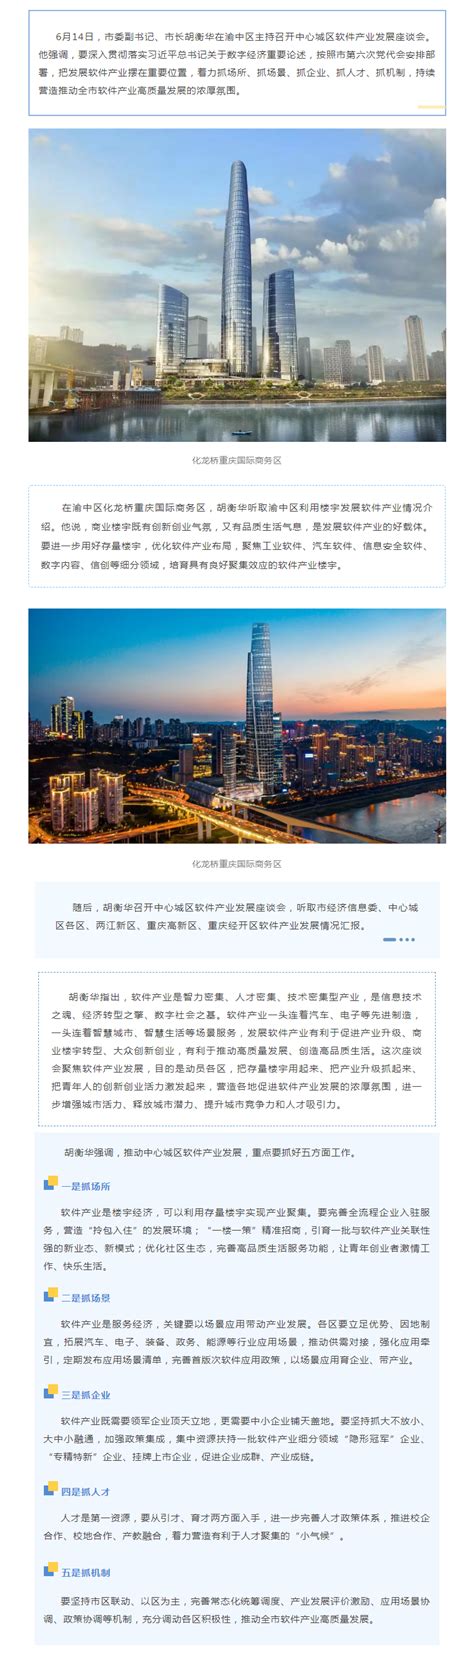 重庆持续营造推动软件产业高质量发展浓厚氛围-重庆市招商投资促进局